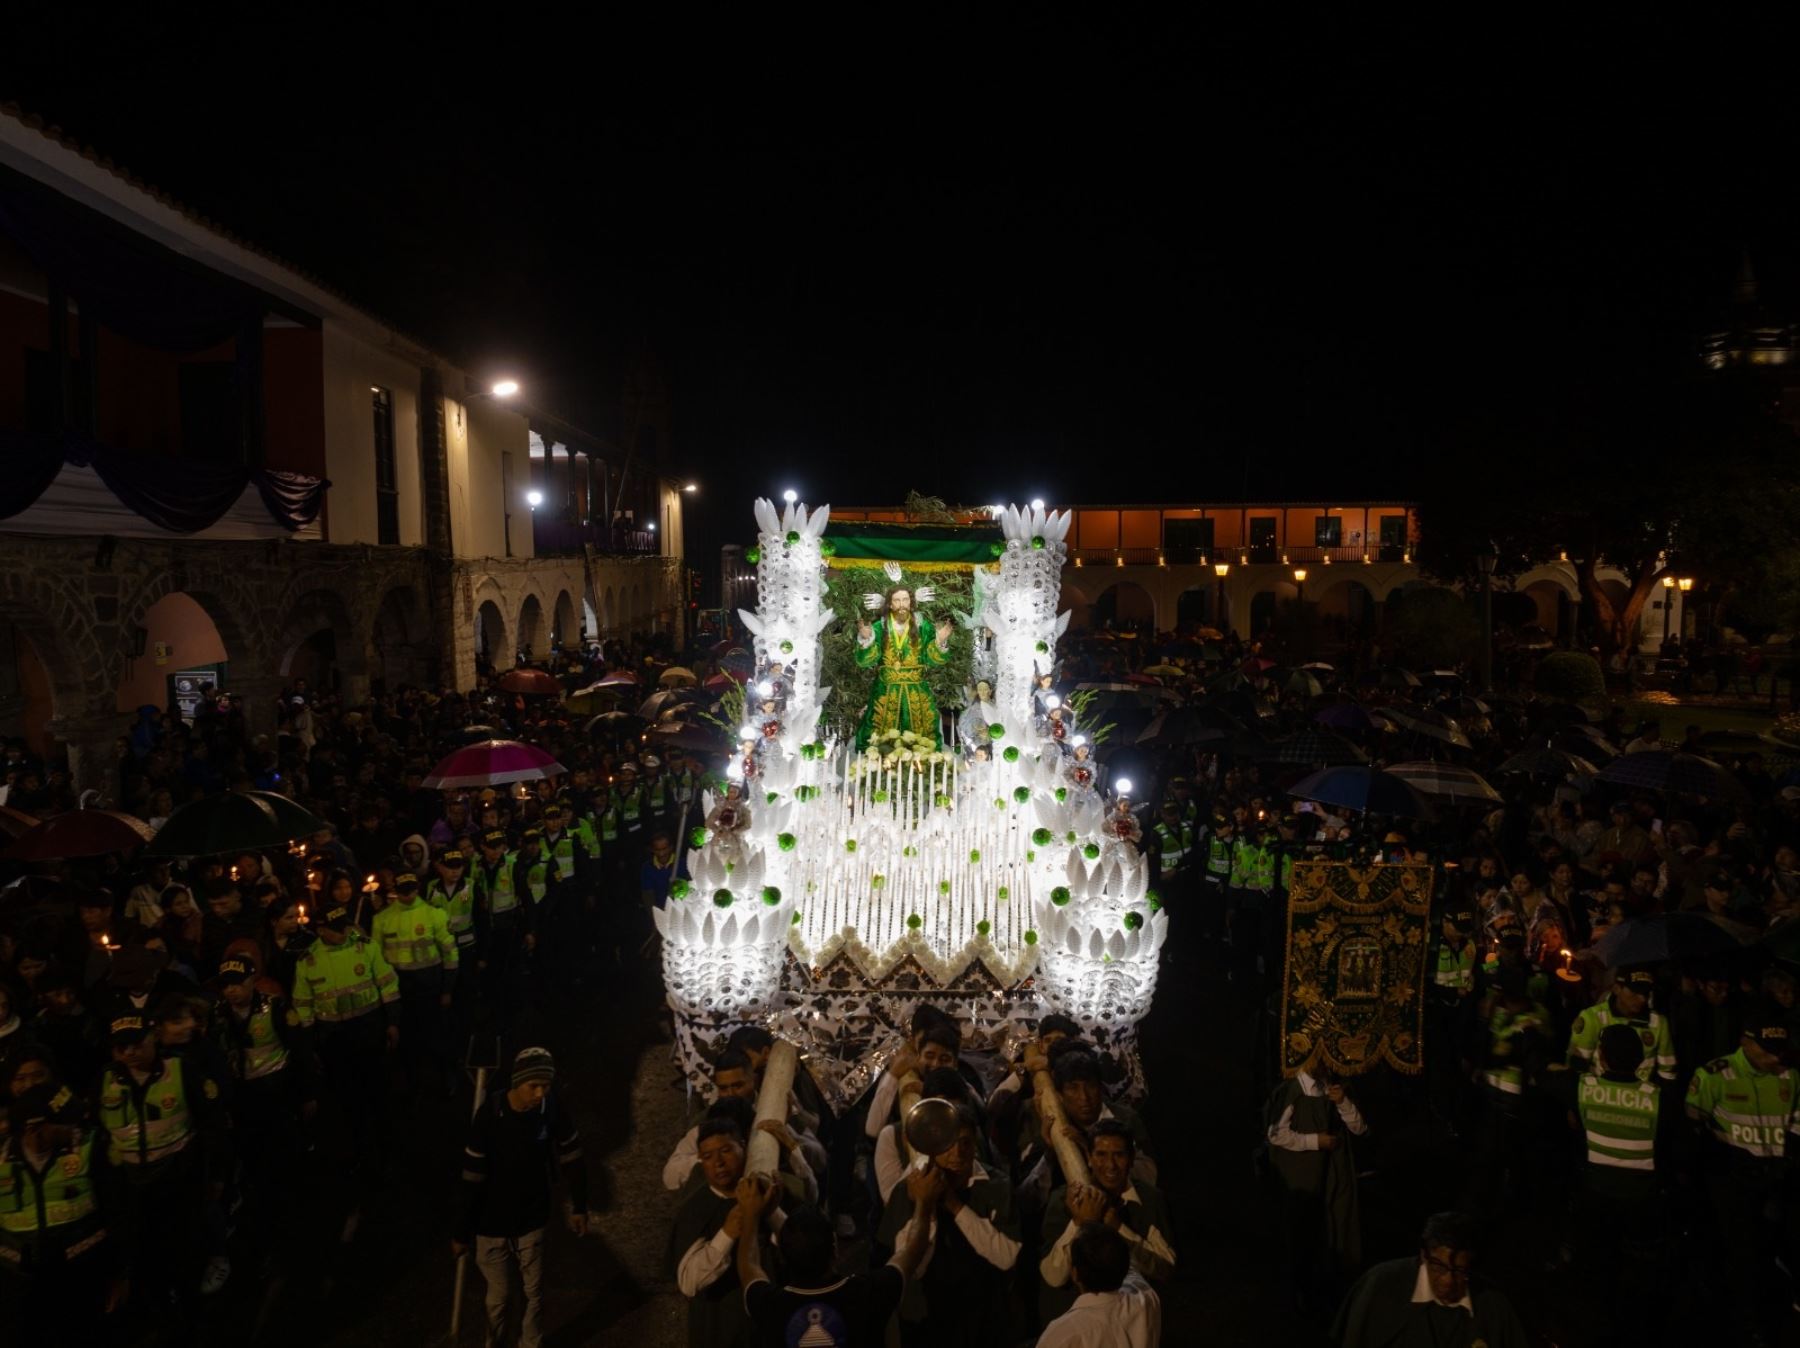 Devoción en Ayacucho. Cientos de feligreses acompañaron anoche la procesión del Señor del Huerto en el lunes santo, una actividad tradicional que forma parte de la celebración de la Semana Santa en Ayacucho. ANDINA/Difusión